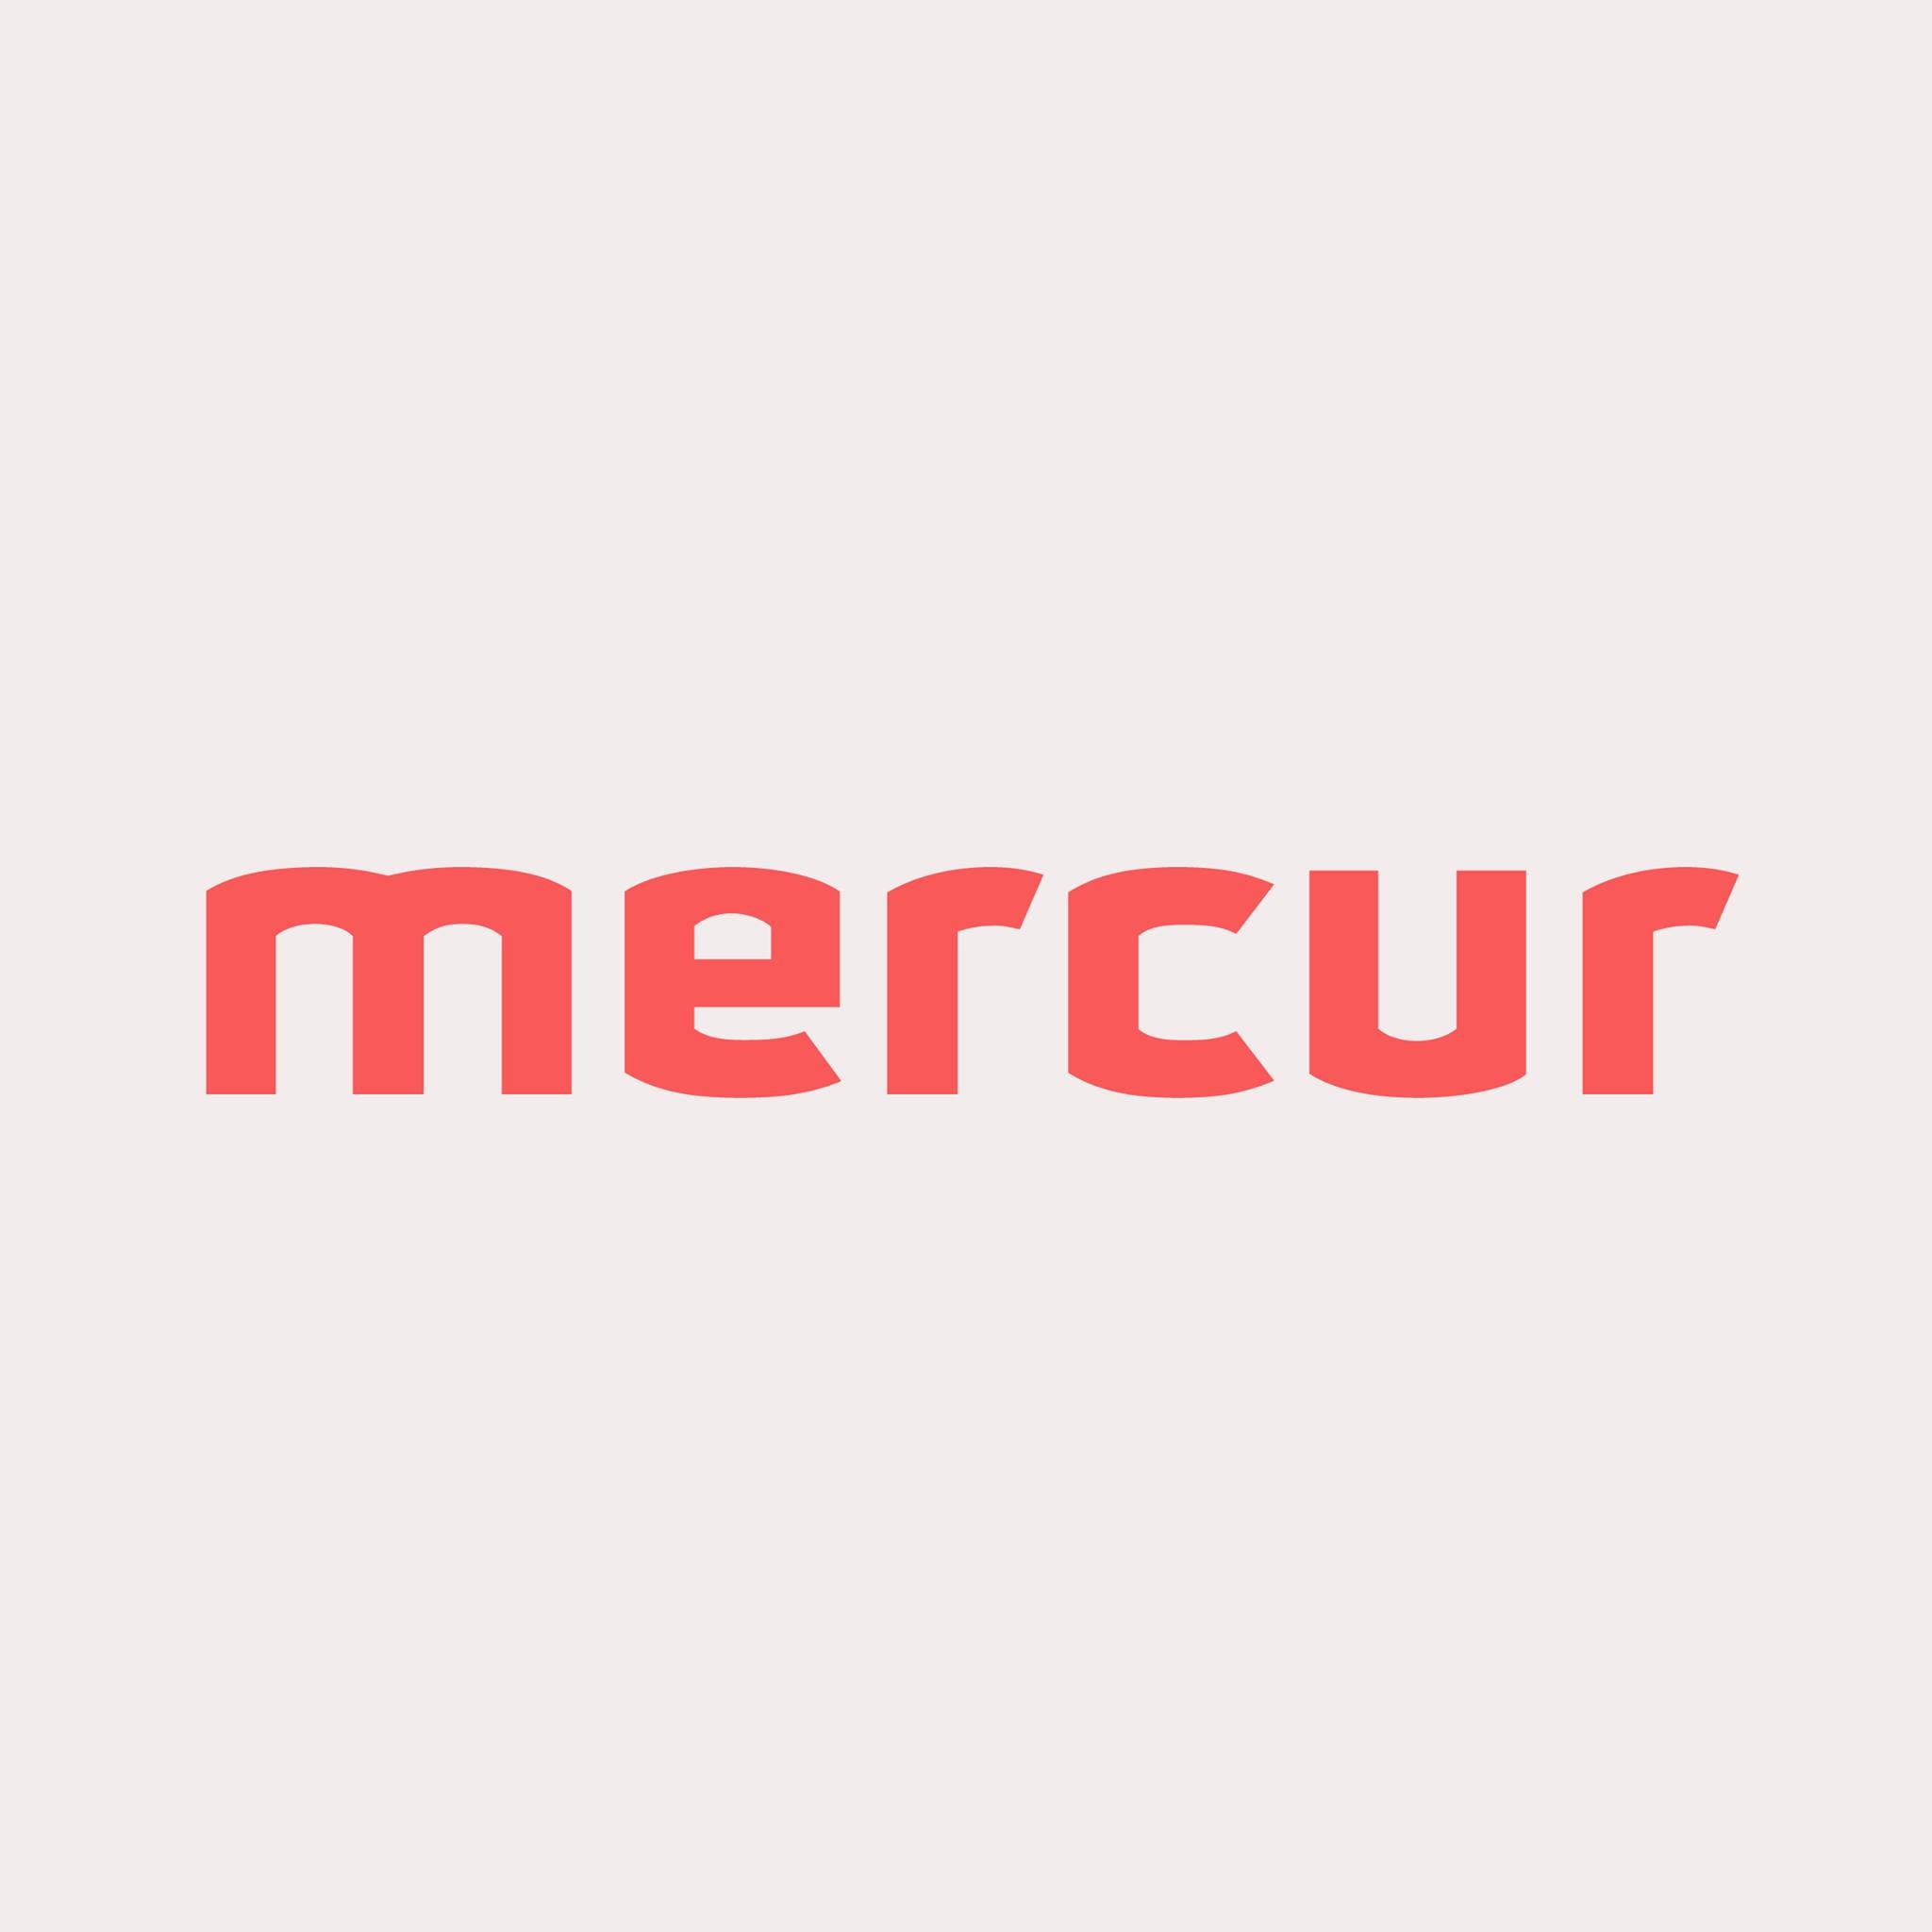 Mercur Solutions